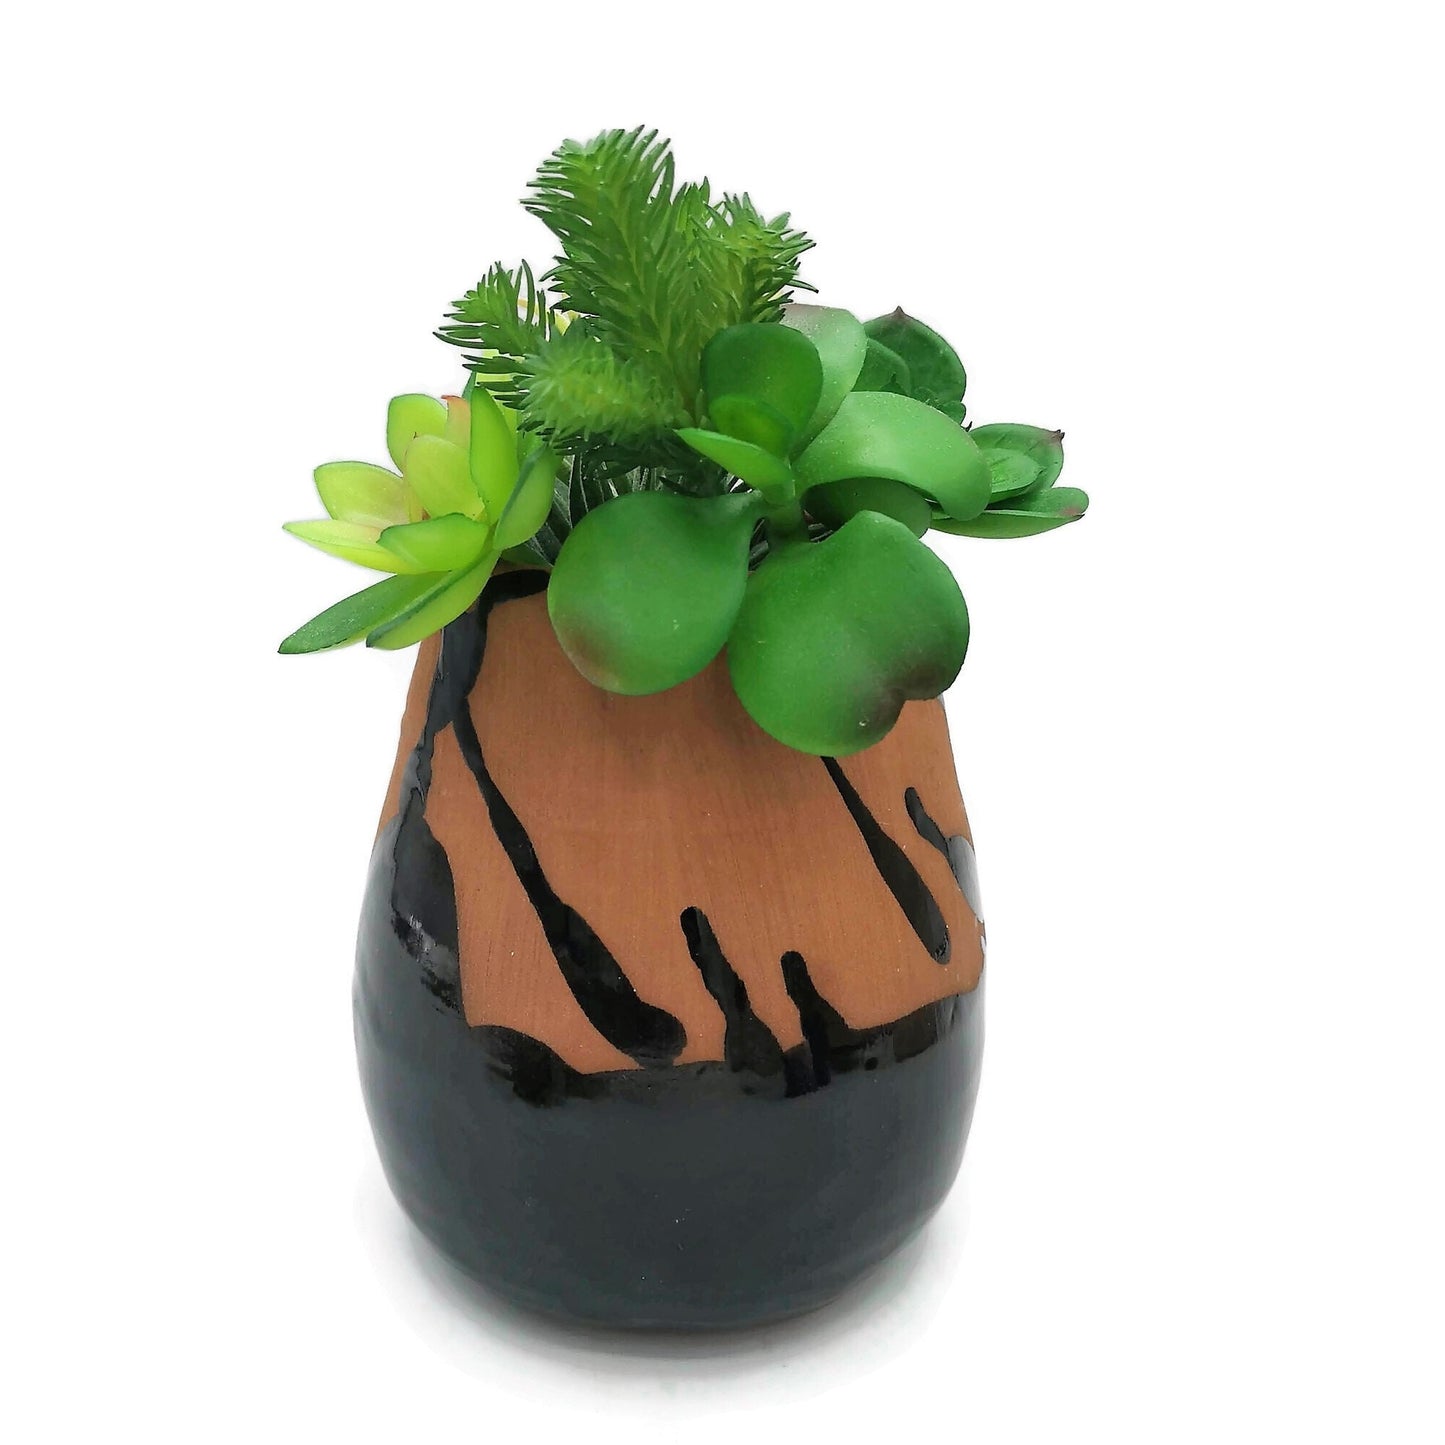 CERAMIC UTENSIL HOLDER, Modern Ceramic Vase, Large Utensil Kitchen Holder Vase, Custom Utensil Organizer, Studio Pottery - Ceramica Ana Rafael